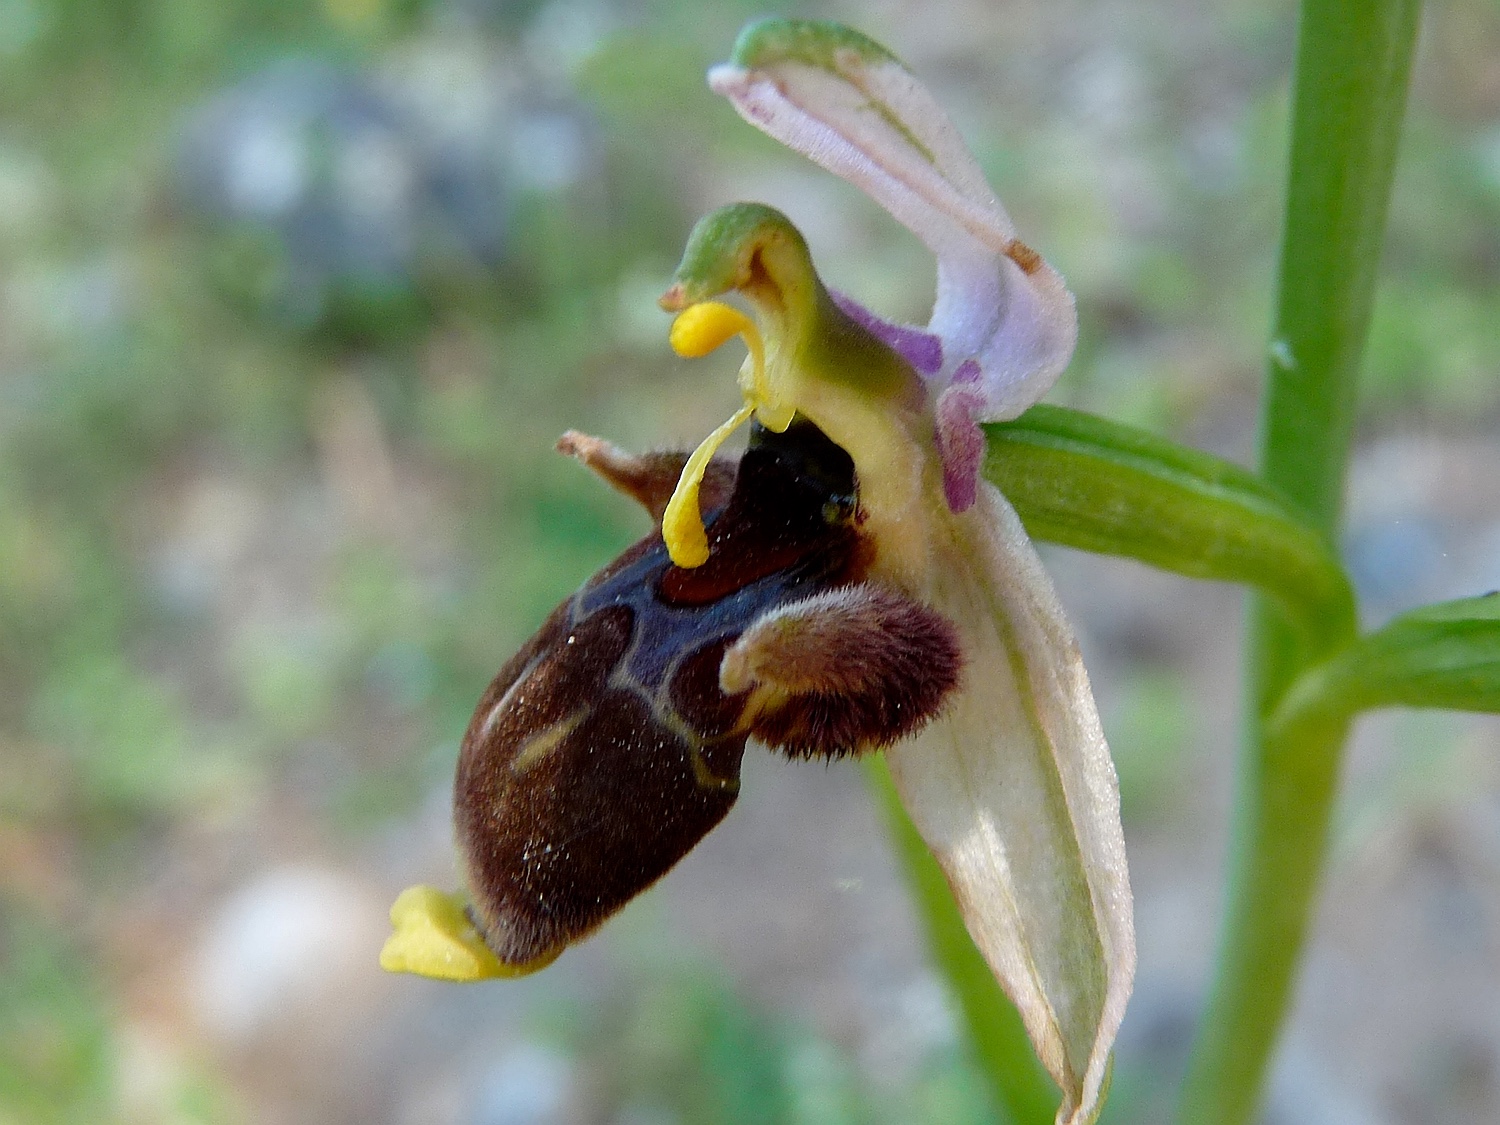 Ophrys scolopax heldreichii, Blüte mit Pollinarien